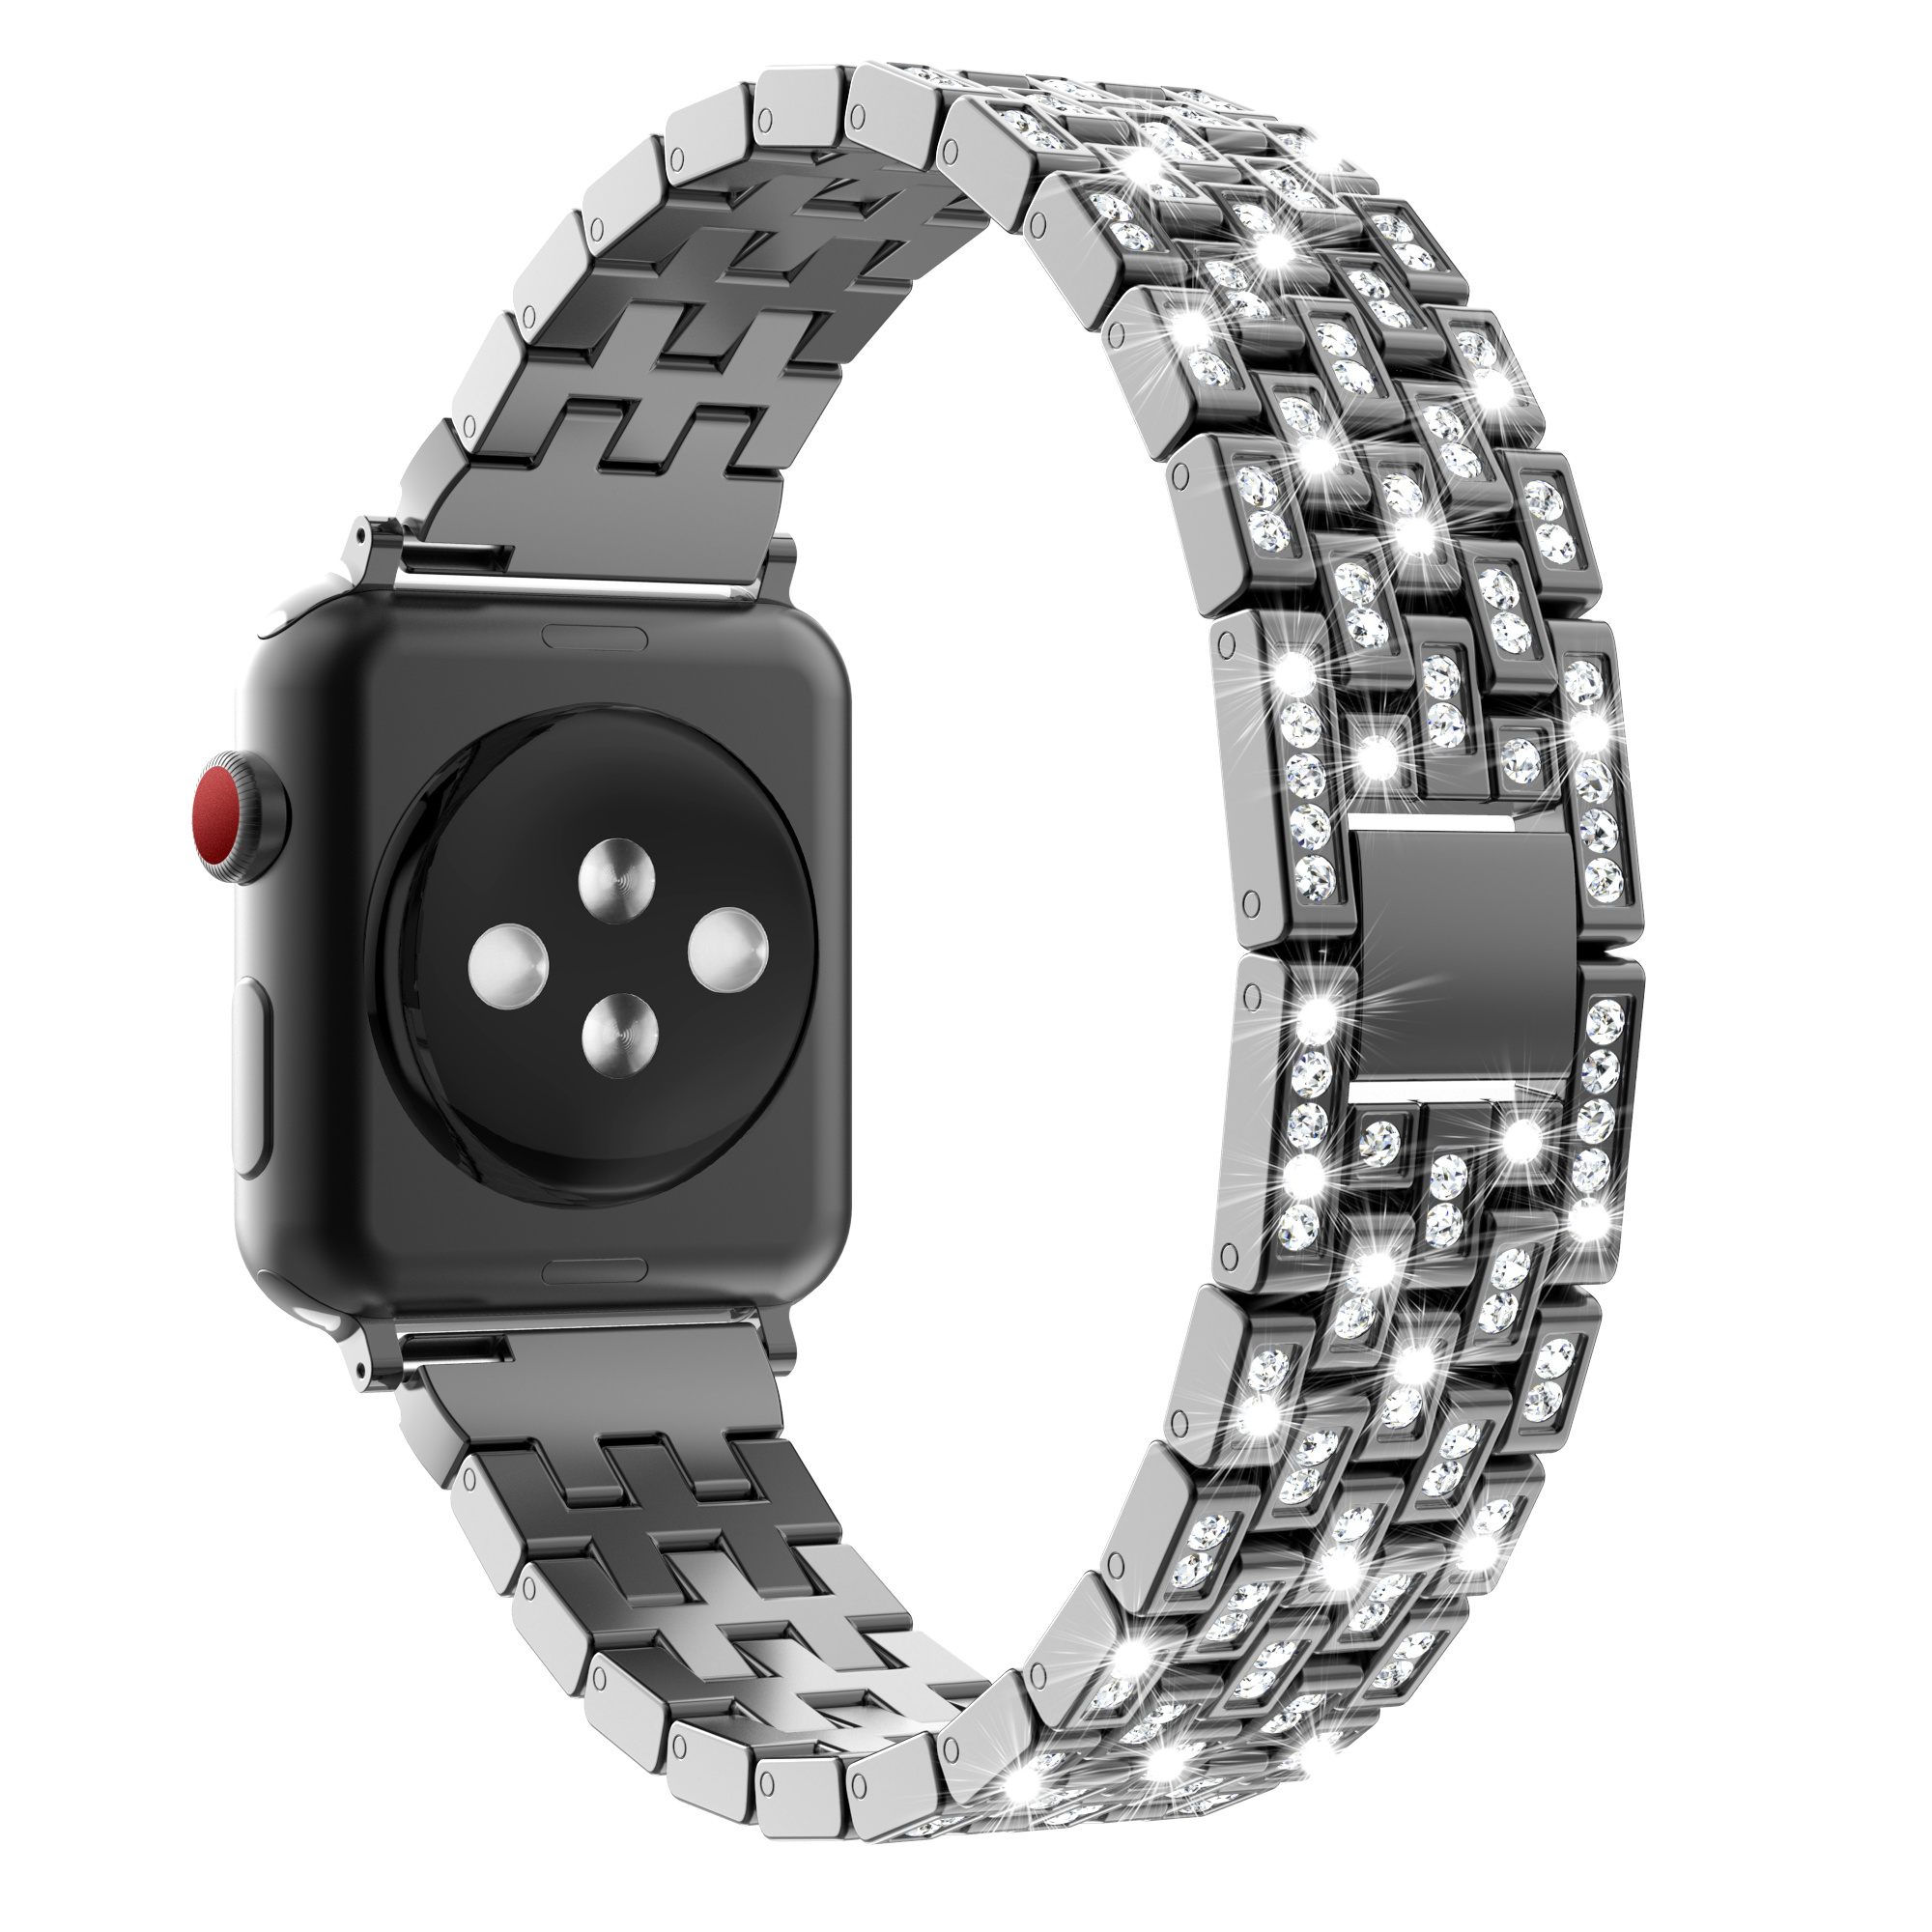 5 款自定义表盘 让你的 Apple Watch 效率翻倍 - 知乎